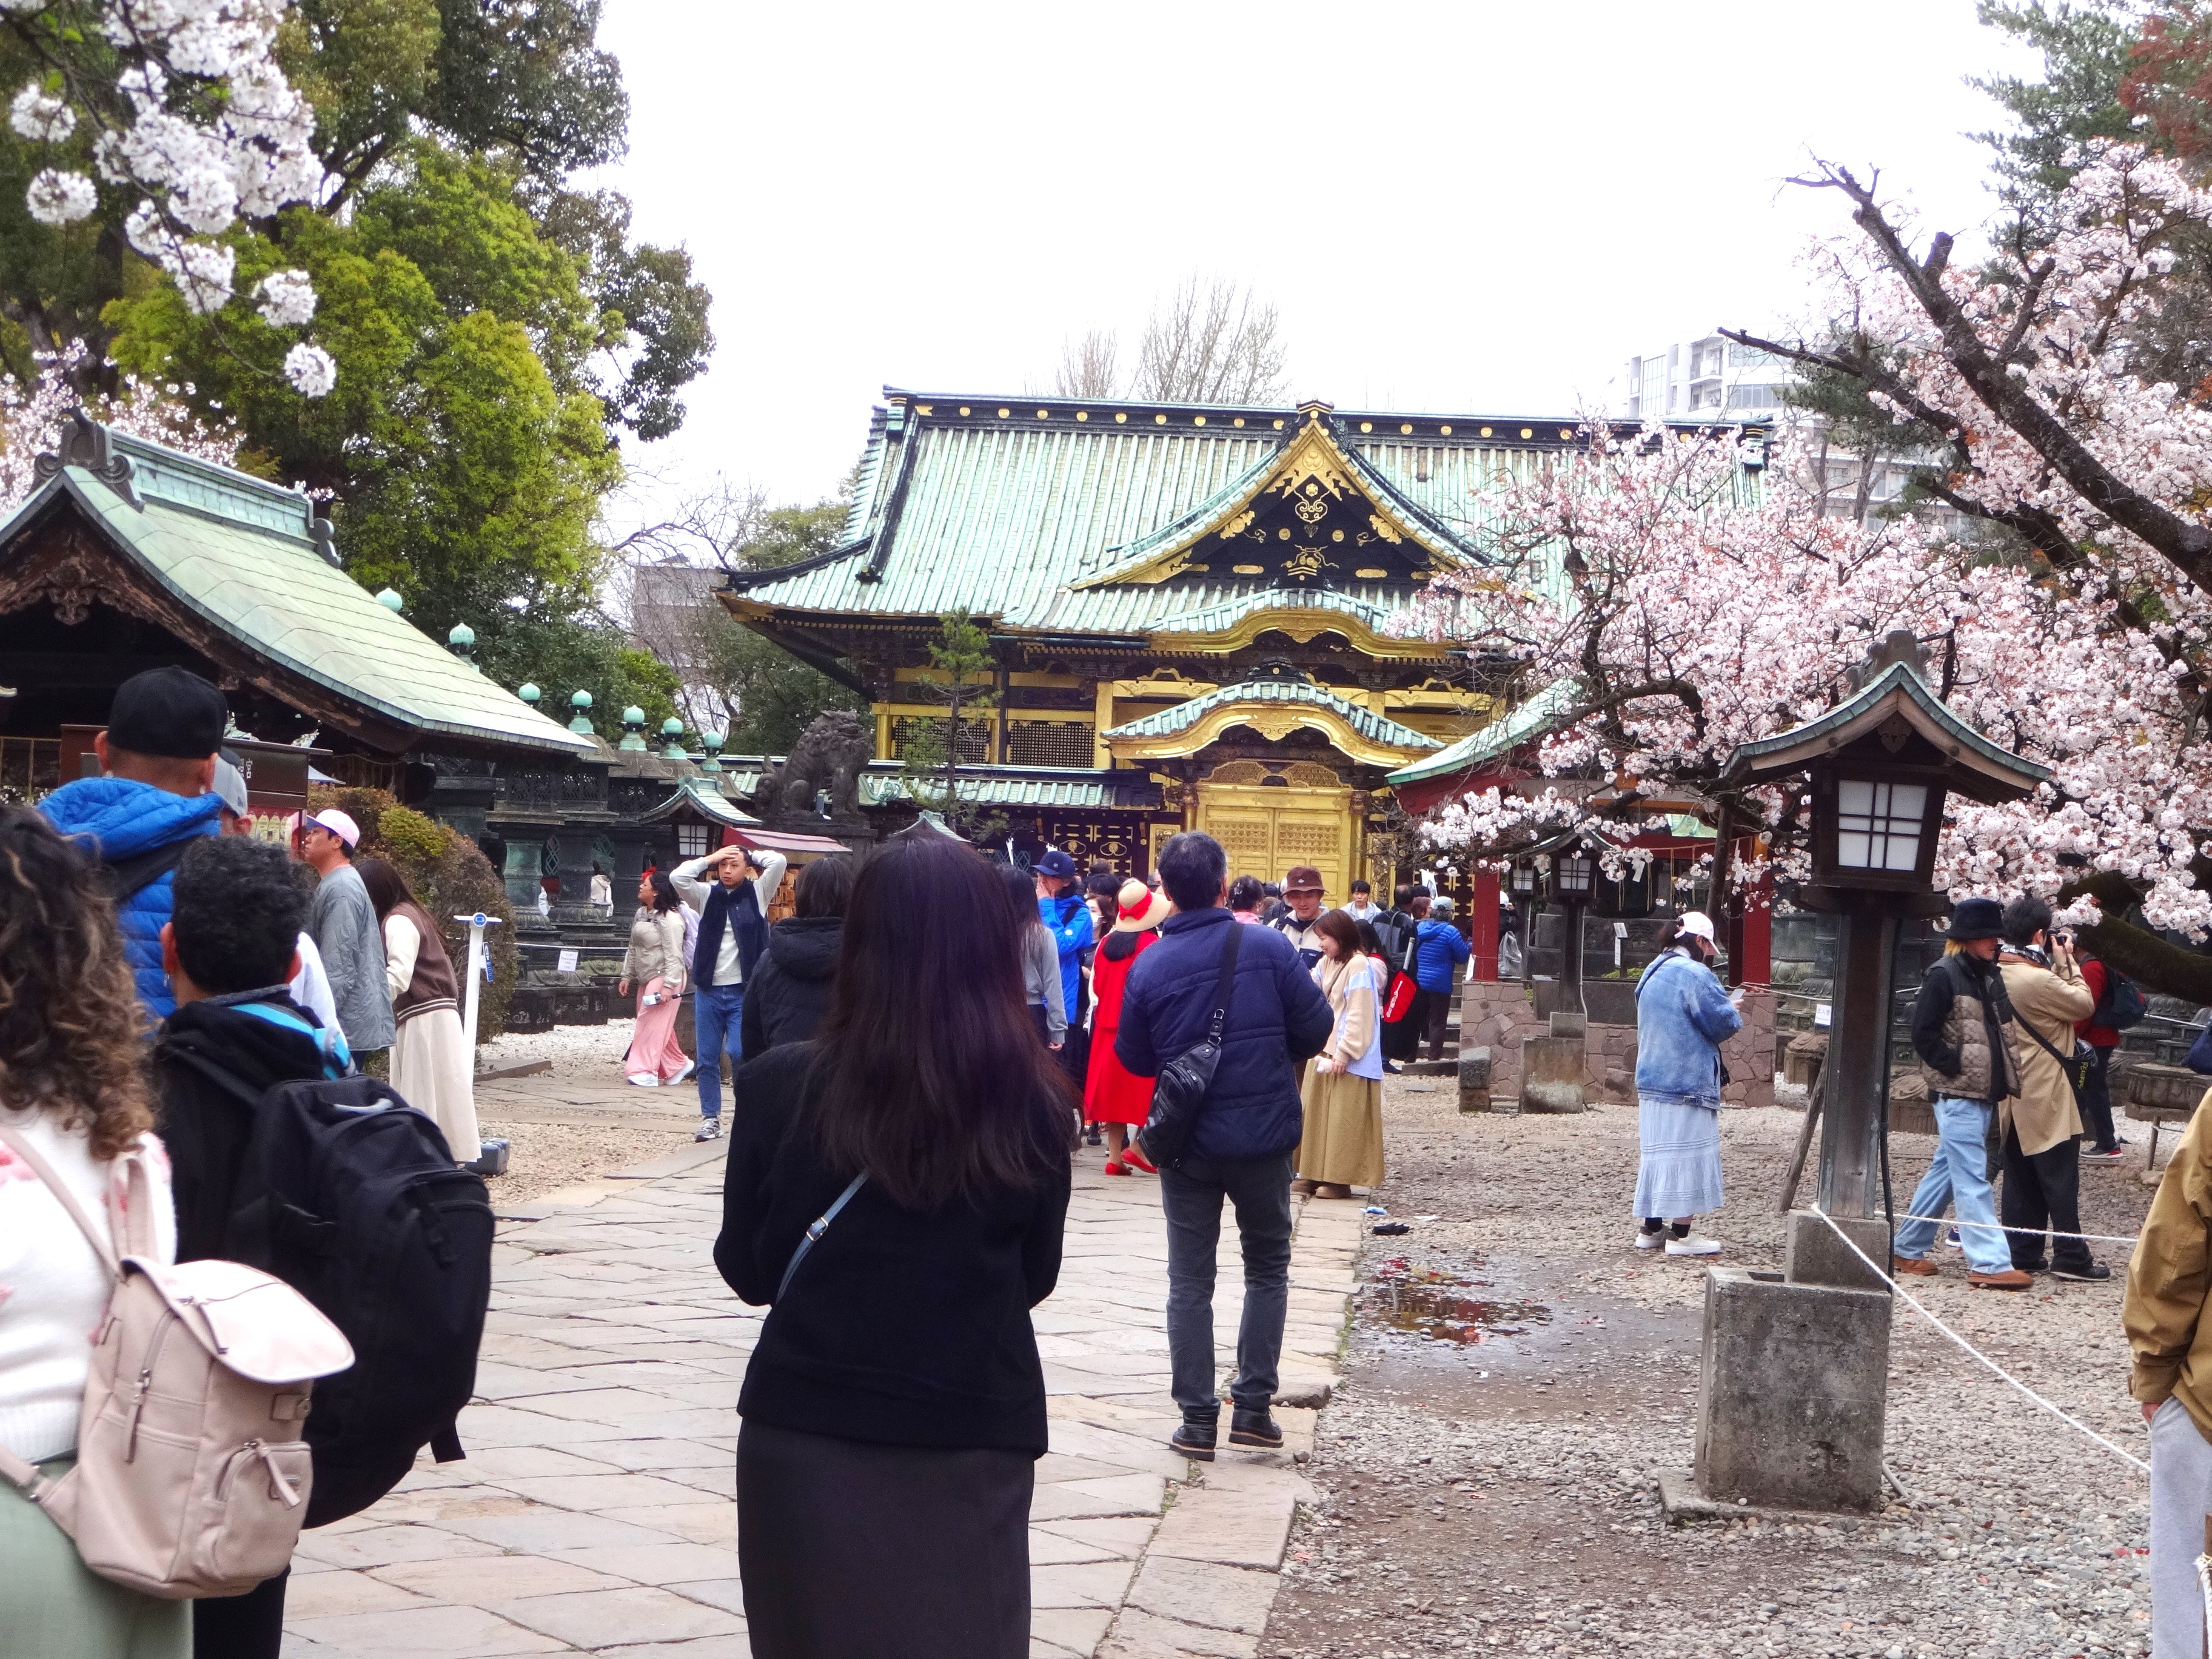 イタリアでも桜はありますが、日本のソメイヨシノに勝る桜はありません。上野東照宮の桜も美しいです。